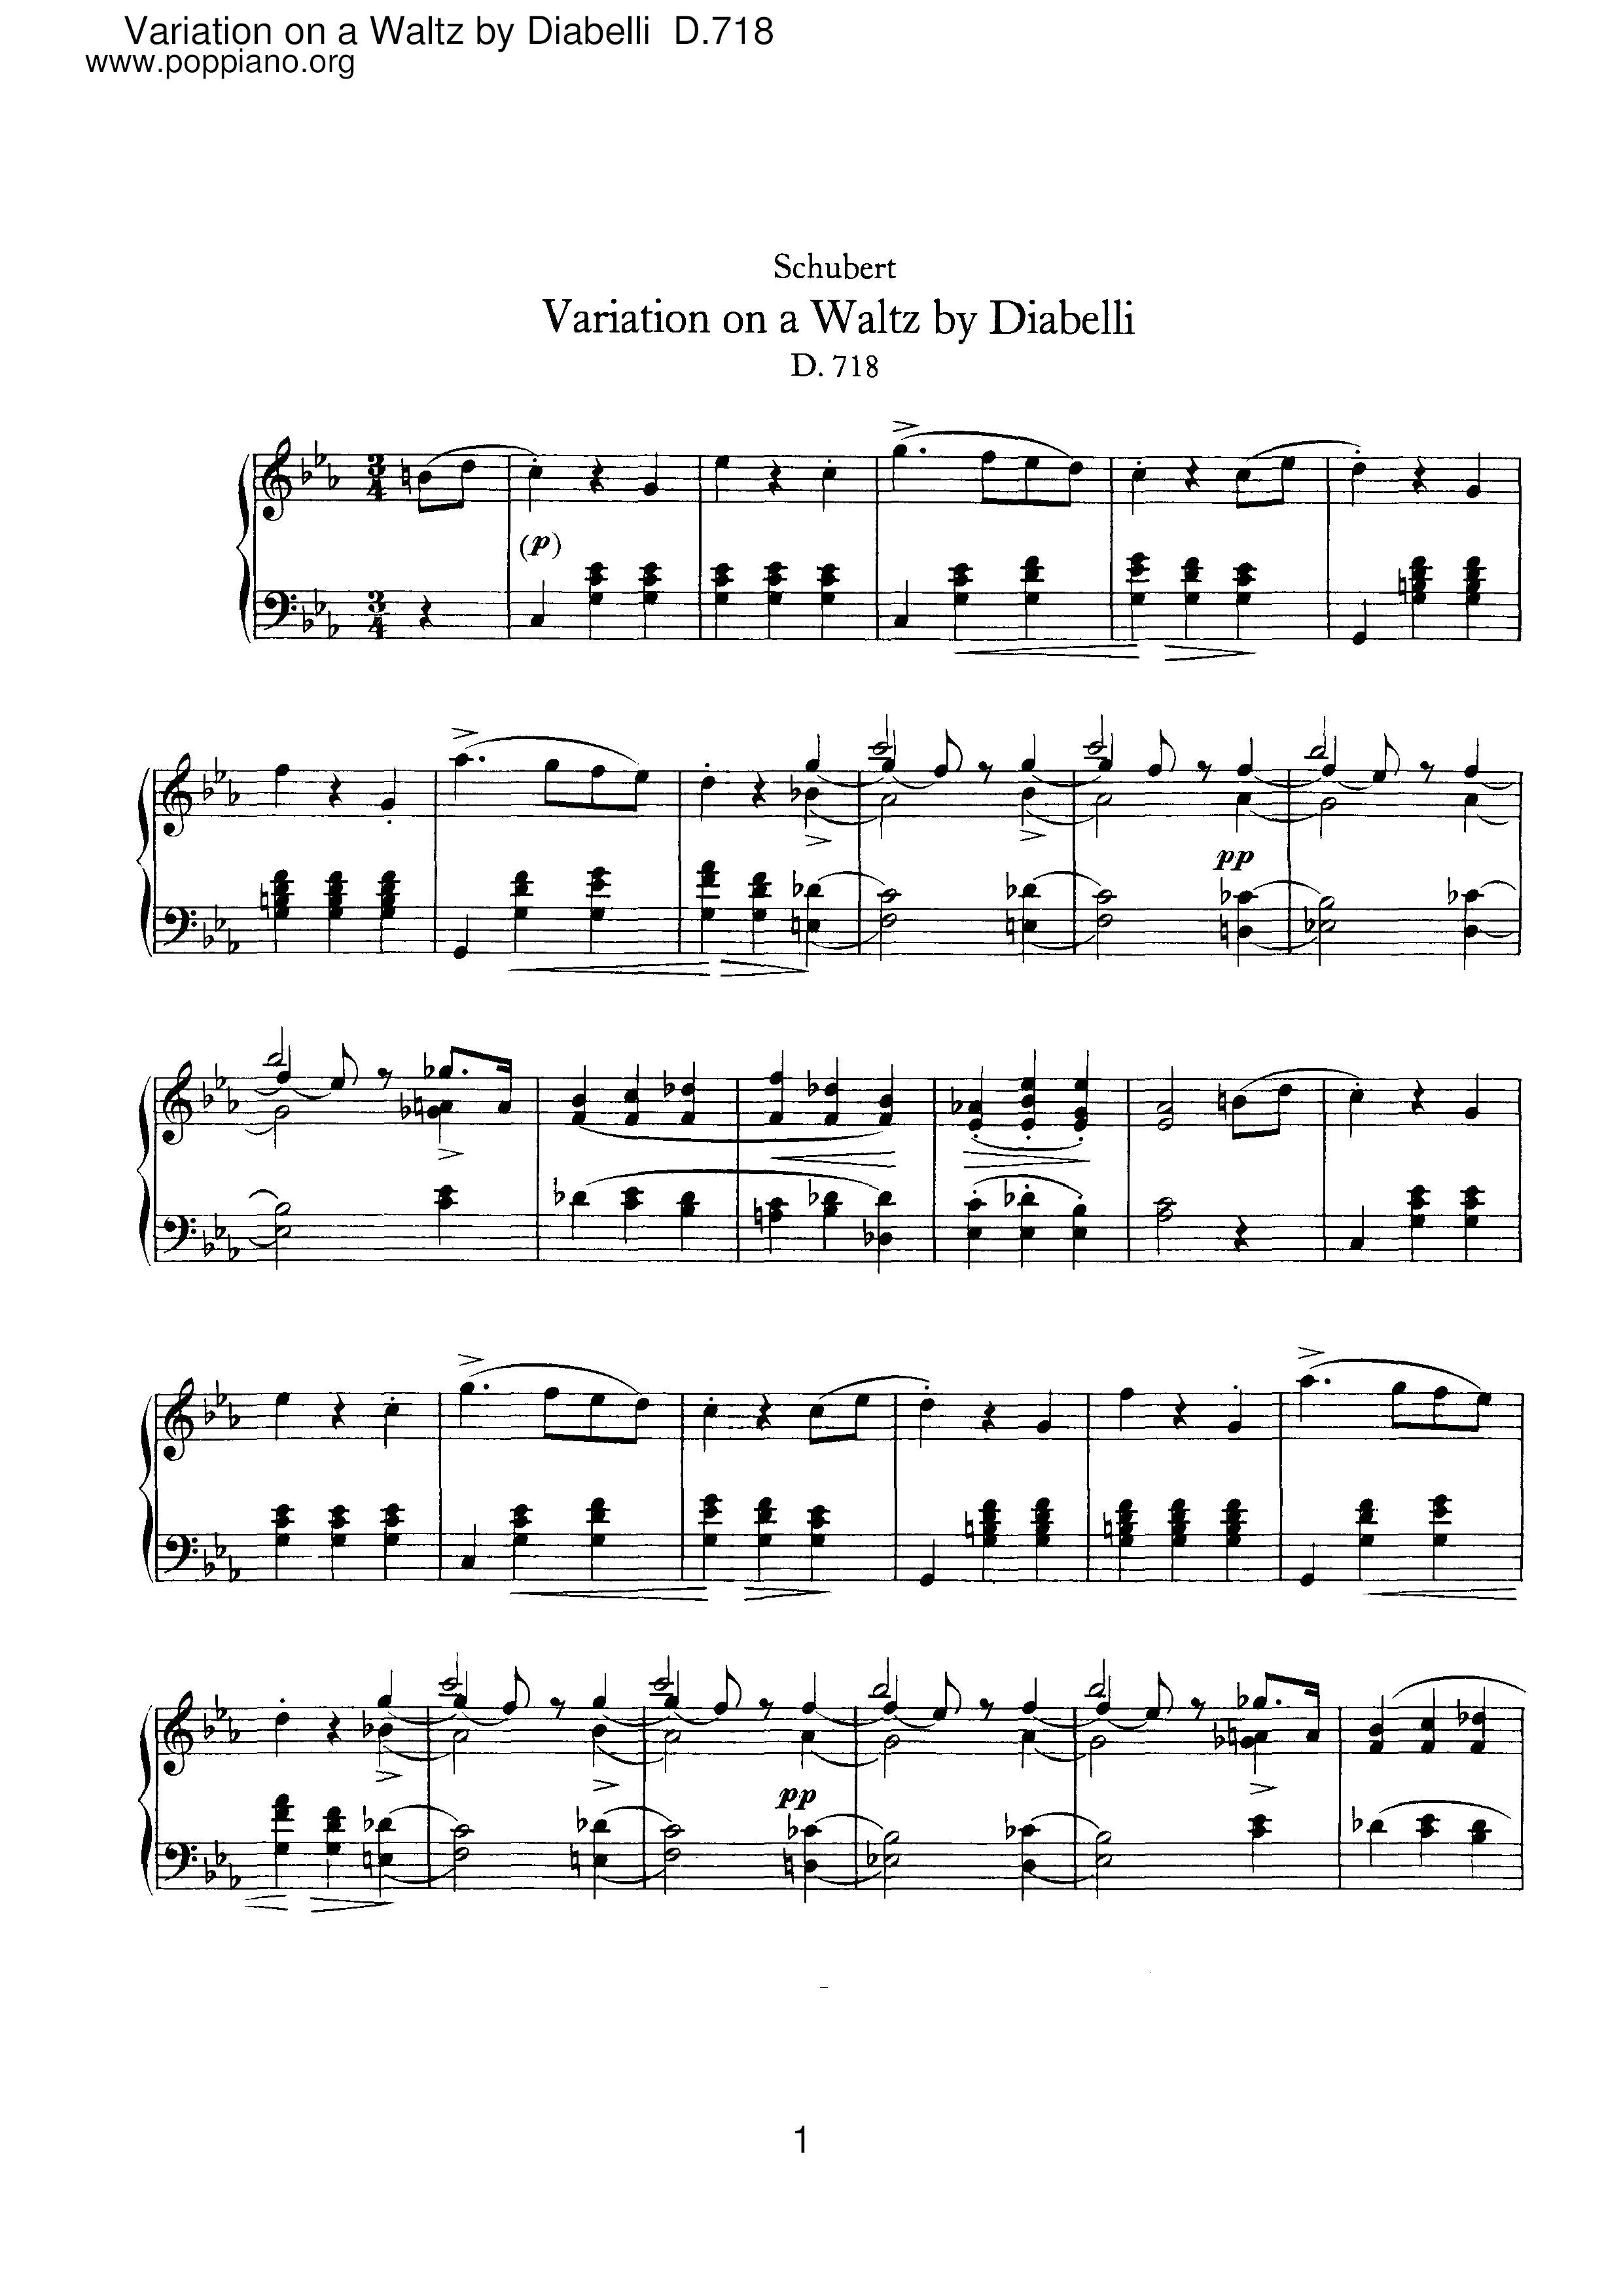 Variation on a Waltz by Diabelli, D.718 Score